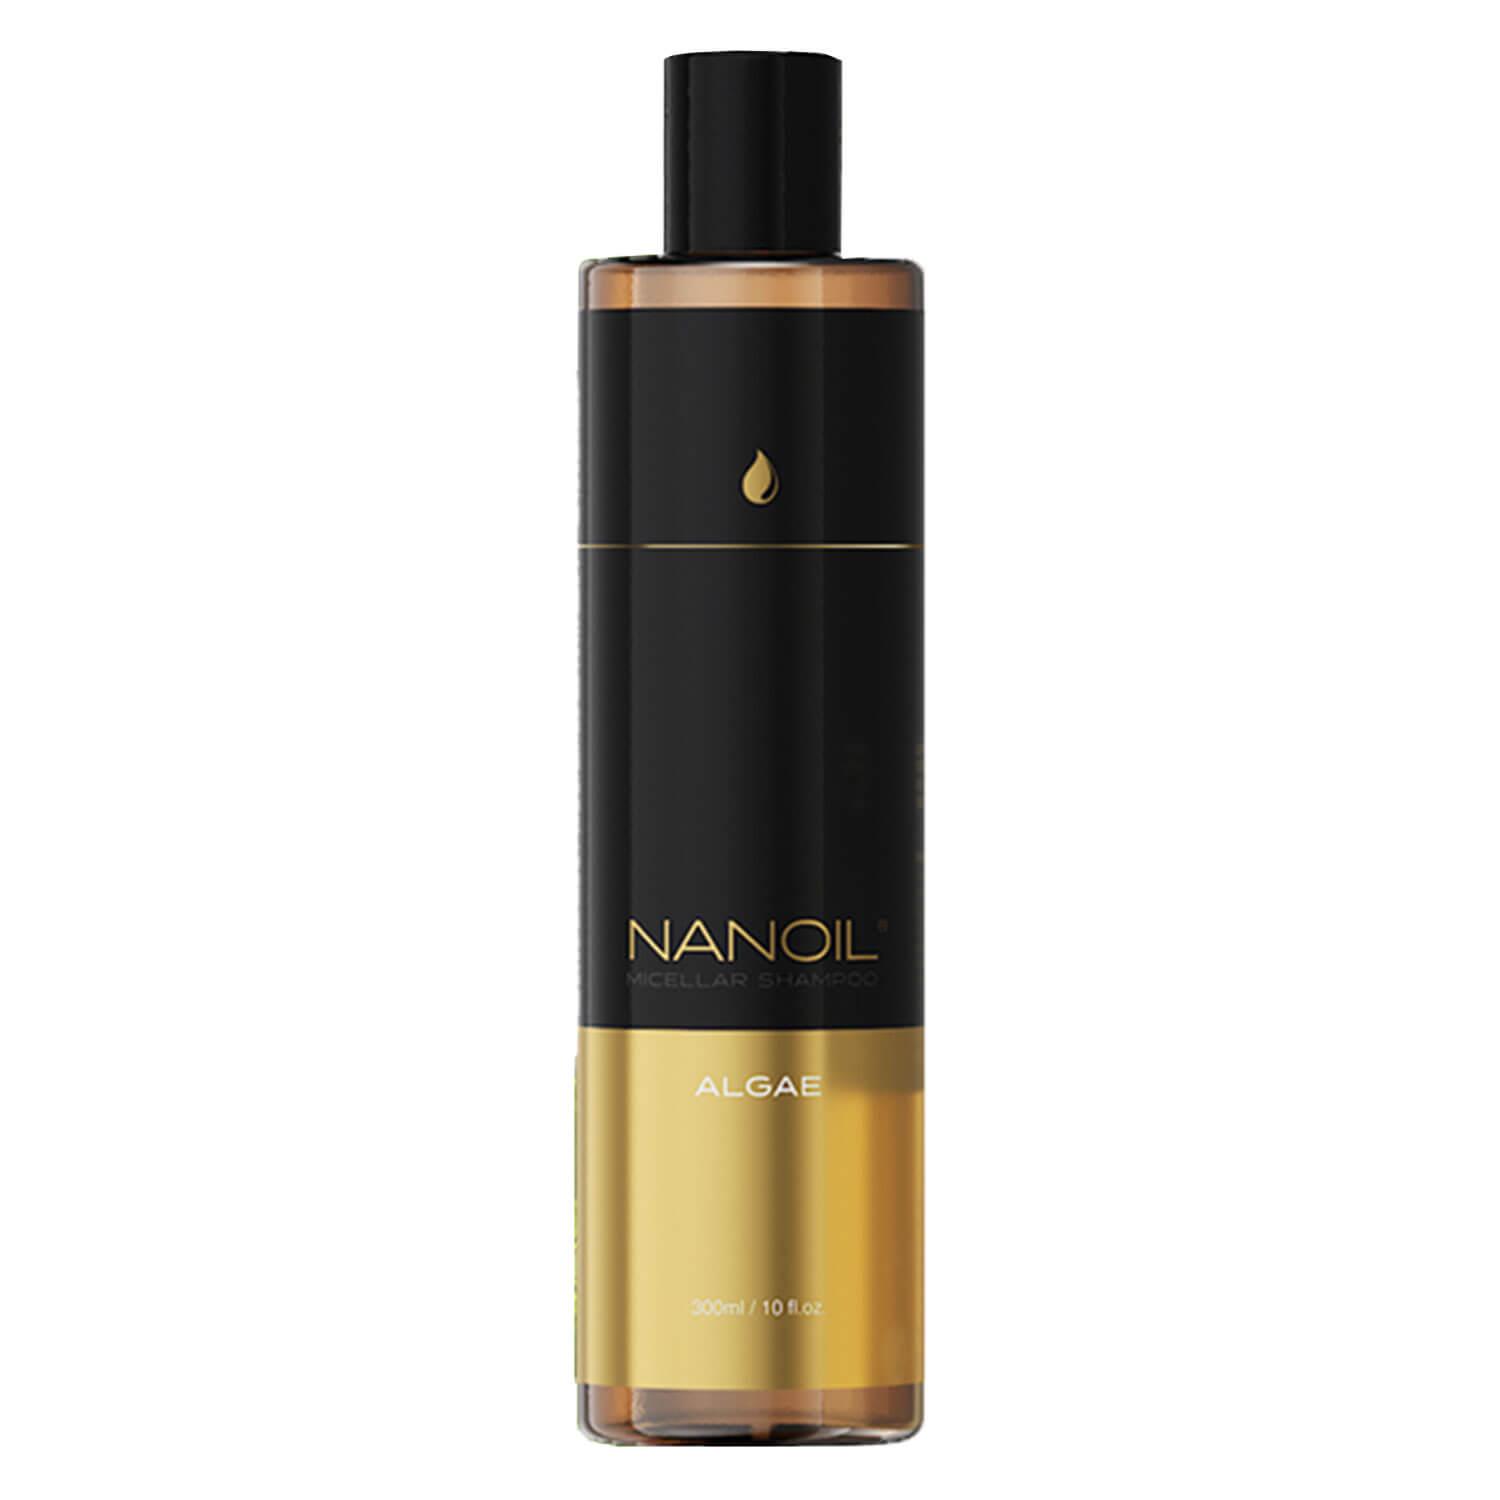 Nanoil - Algae Micellar Shampoo